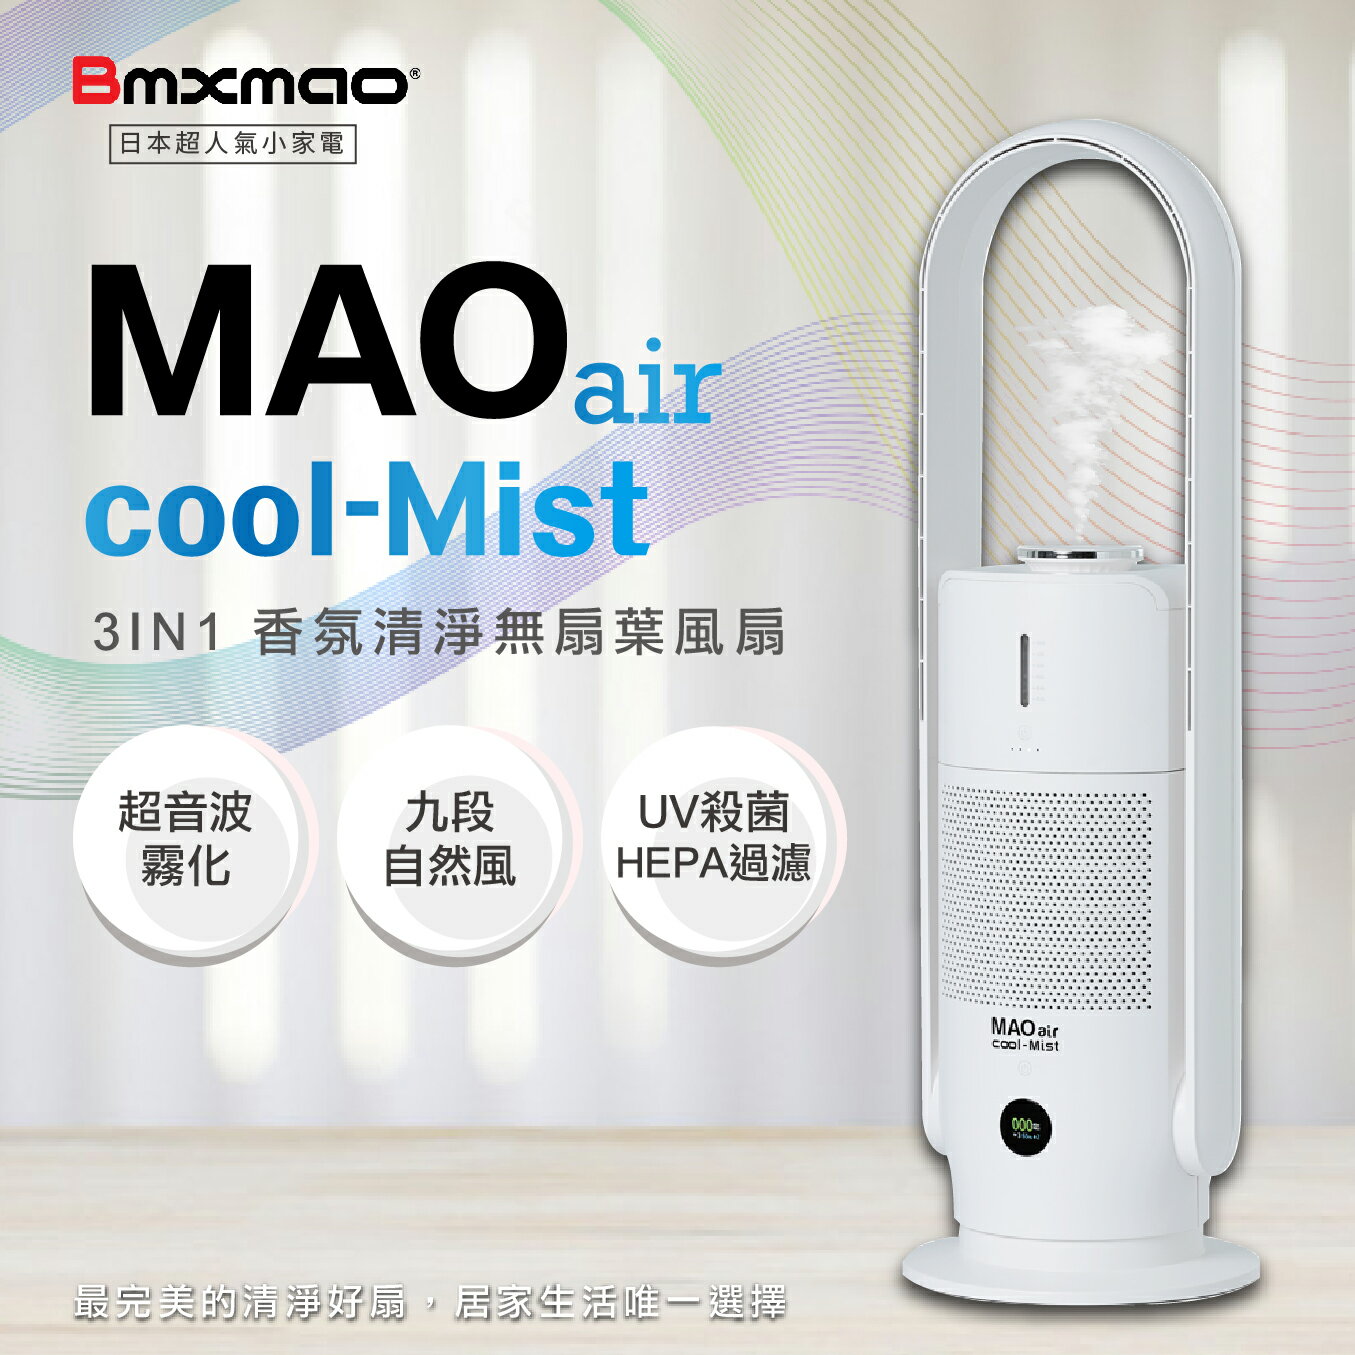 【日本Bmxmao】空間除菌大師 MAO air cool-Mist 3in1香氛清淨無葉風扇 空氣清淨機 香氛機